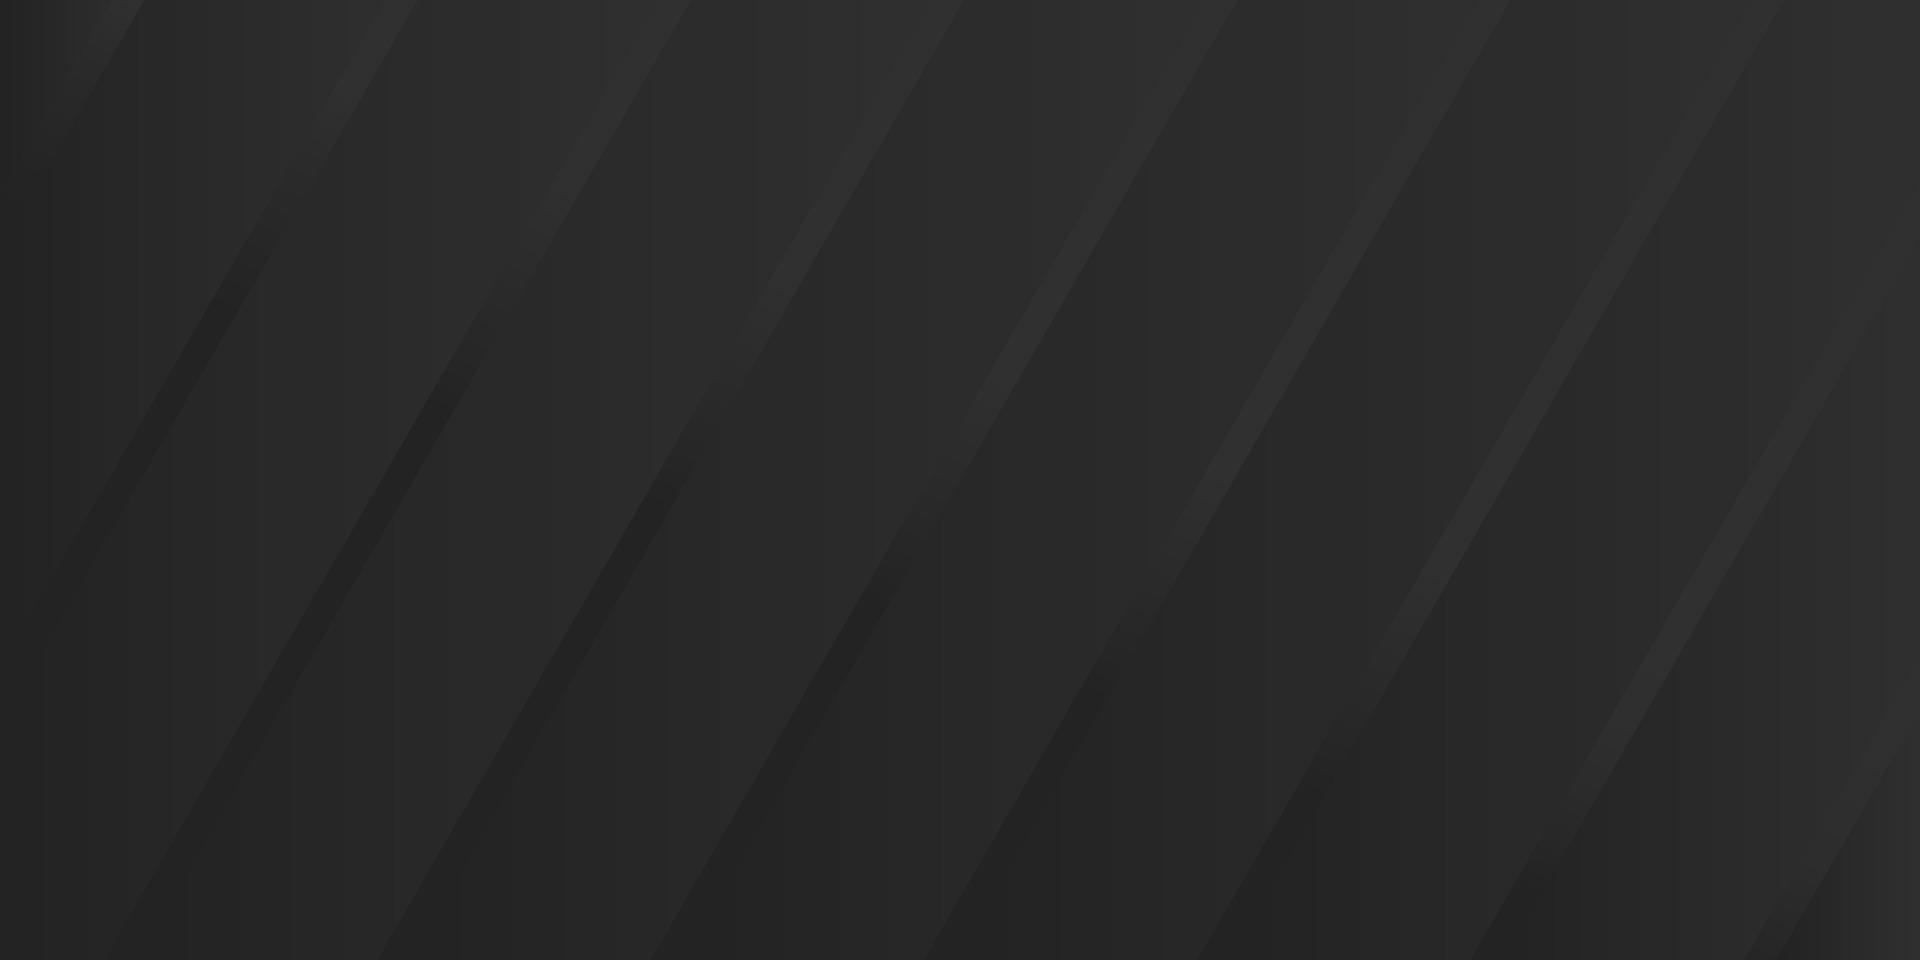 bannière linéaire futuriste gris foncé. fond élégant décoratif noir avec des rayures diagonales. modèle linéaire numérique. texture rayée. papier peint moderne abstrait. illustration vectorielle. vecteur